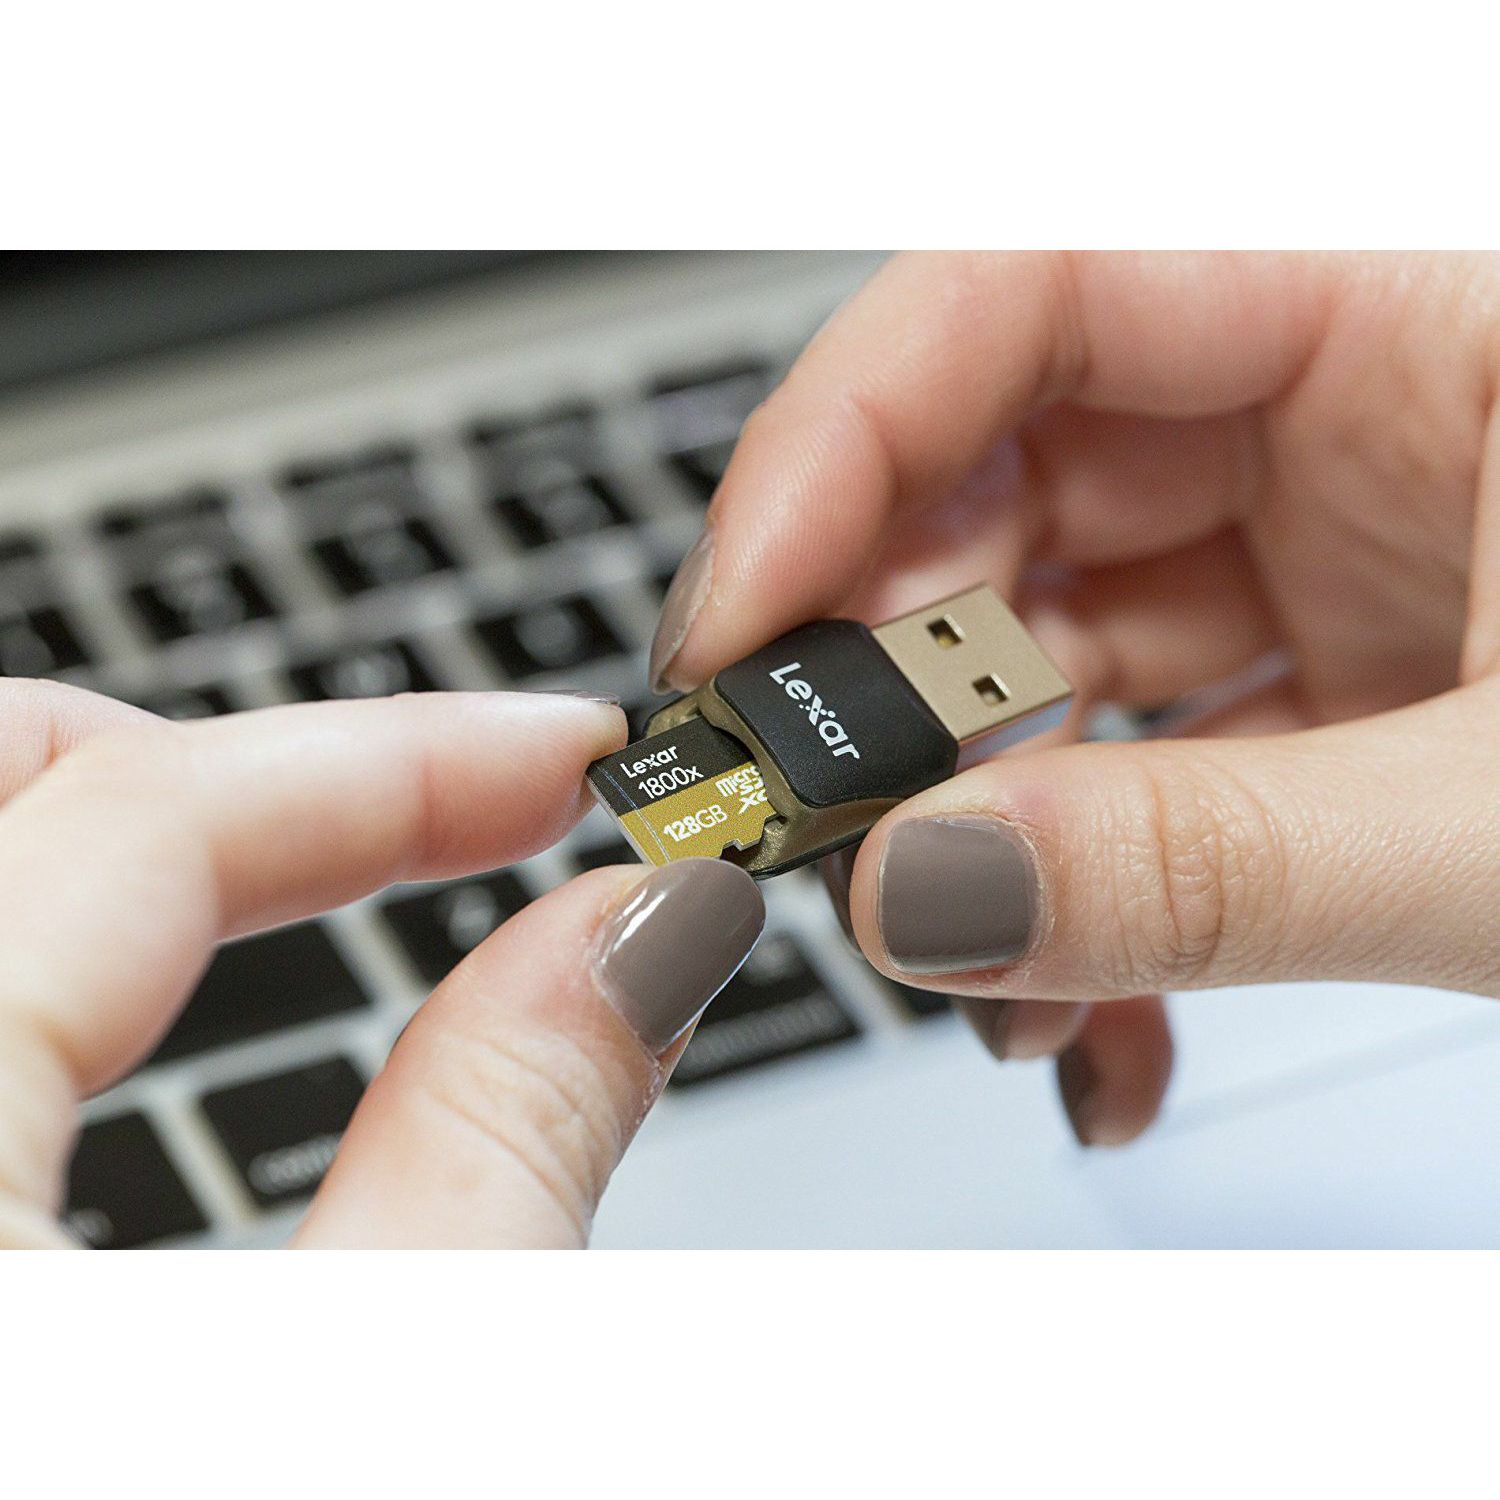 Lexar microSDXC 128GB 1800x 270MB/s UHS-II USB 3.0 Reader + adapter memorijska kartica sa adapterom LSDMI128CRBEU1800R